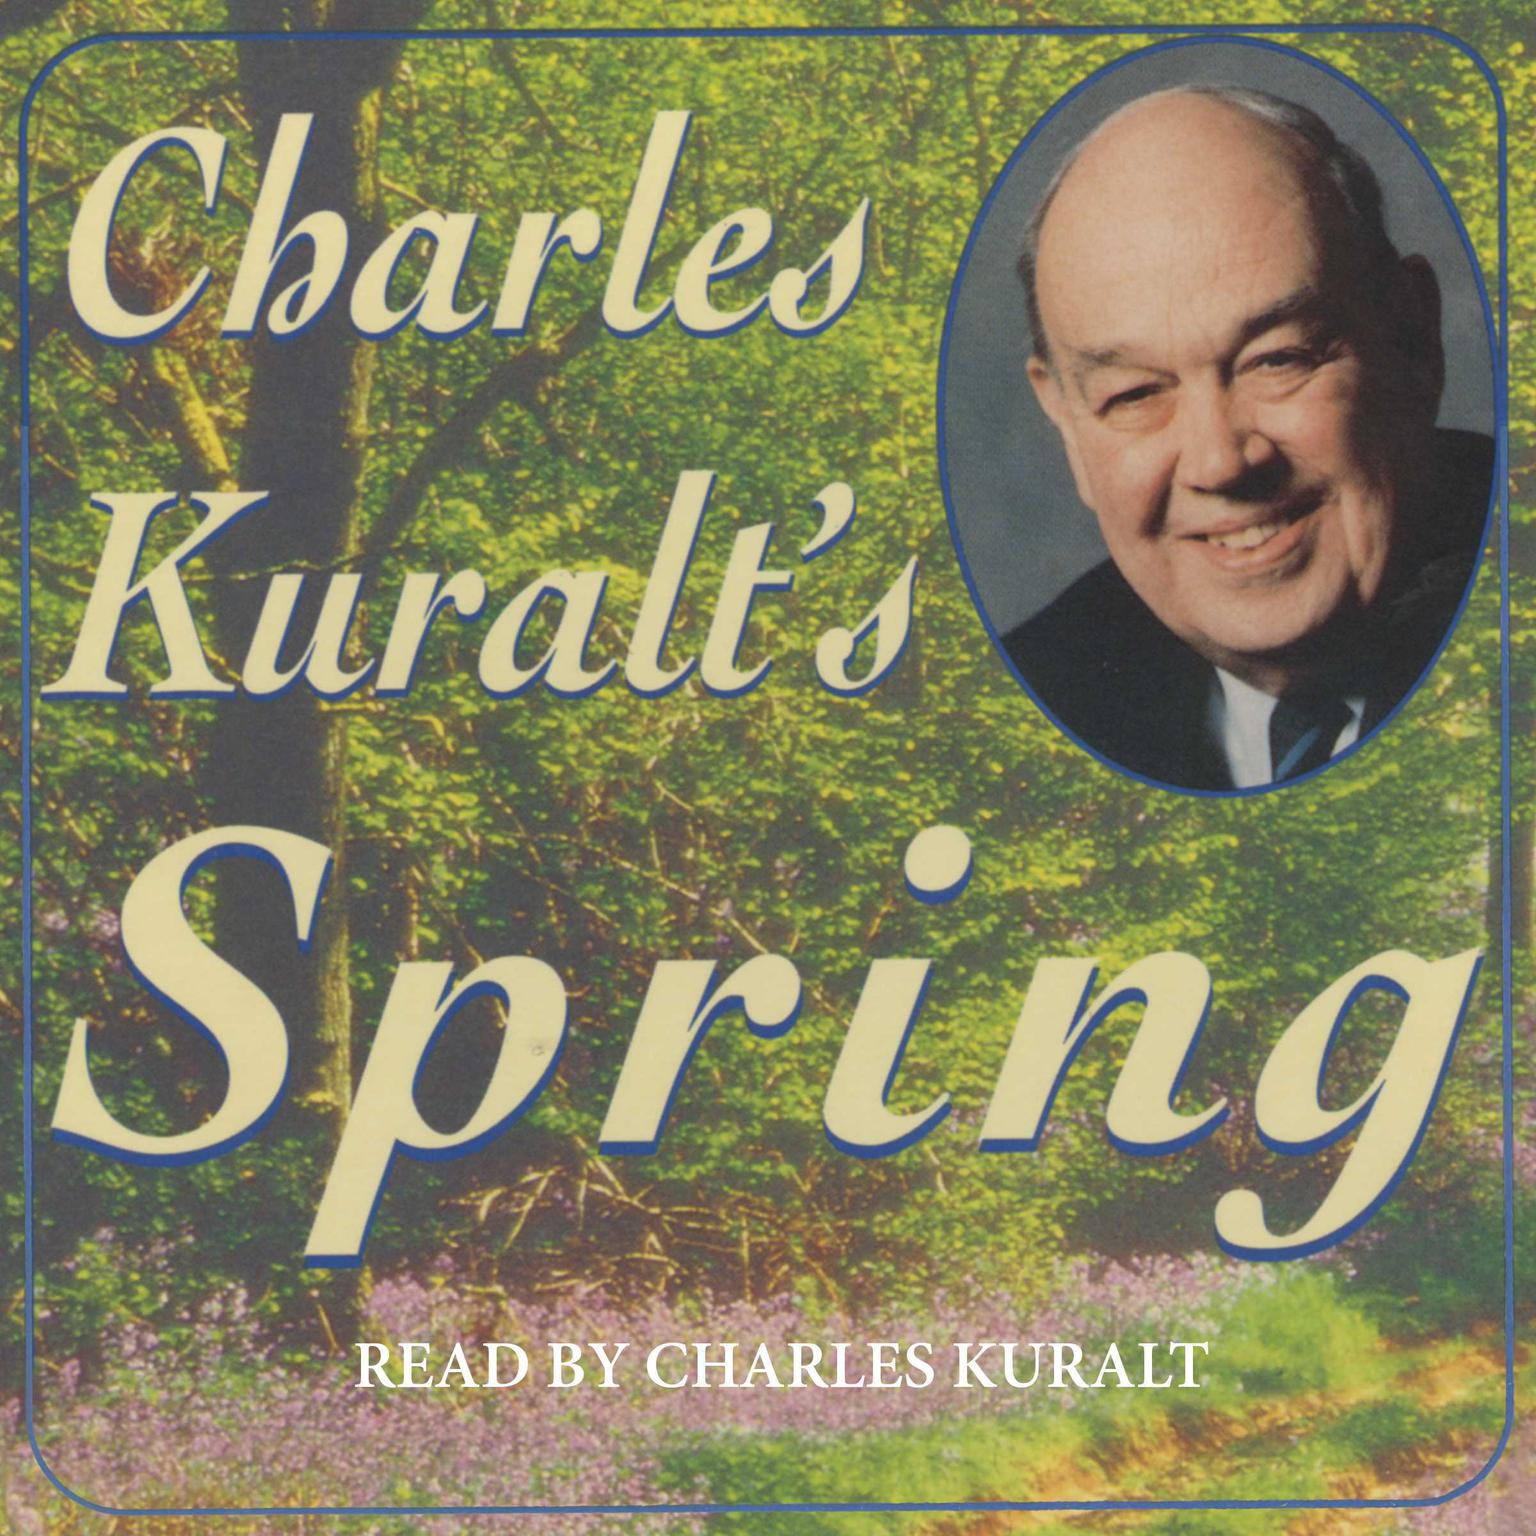 Charles Kuralts Spring (Abridged) Audiobook, by Charles Kuralt